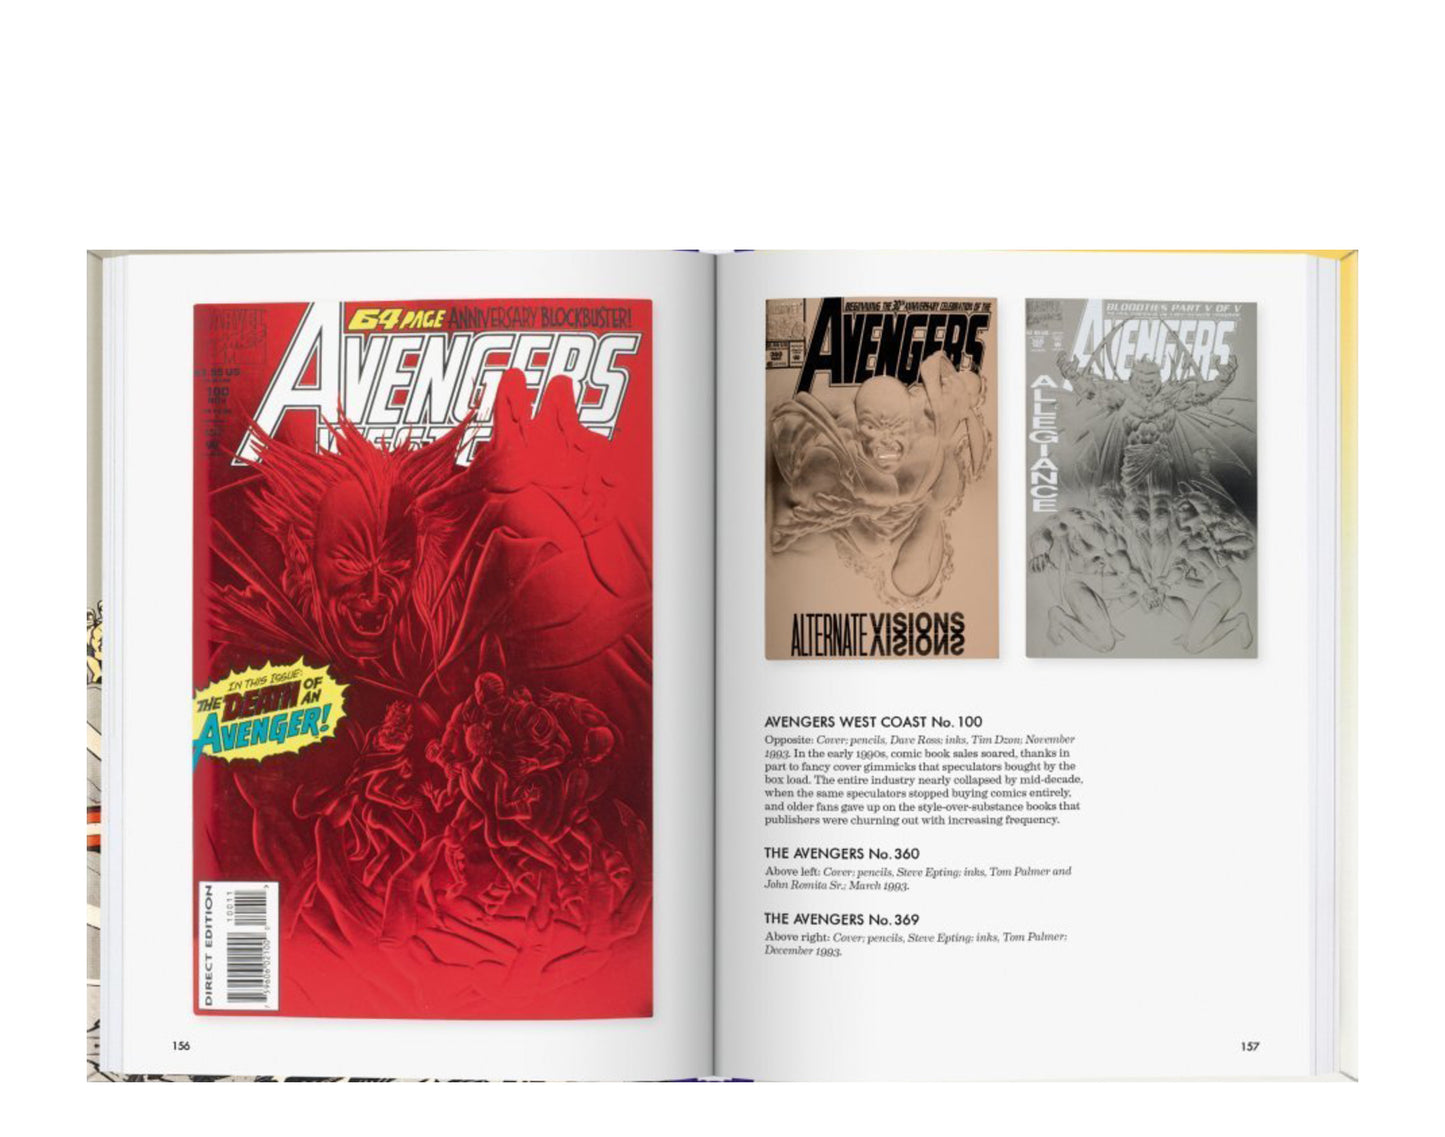 Taschen Books - The Little Book of Avengers Flexicover Book